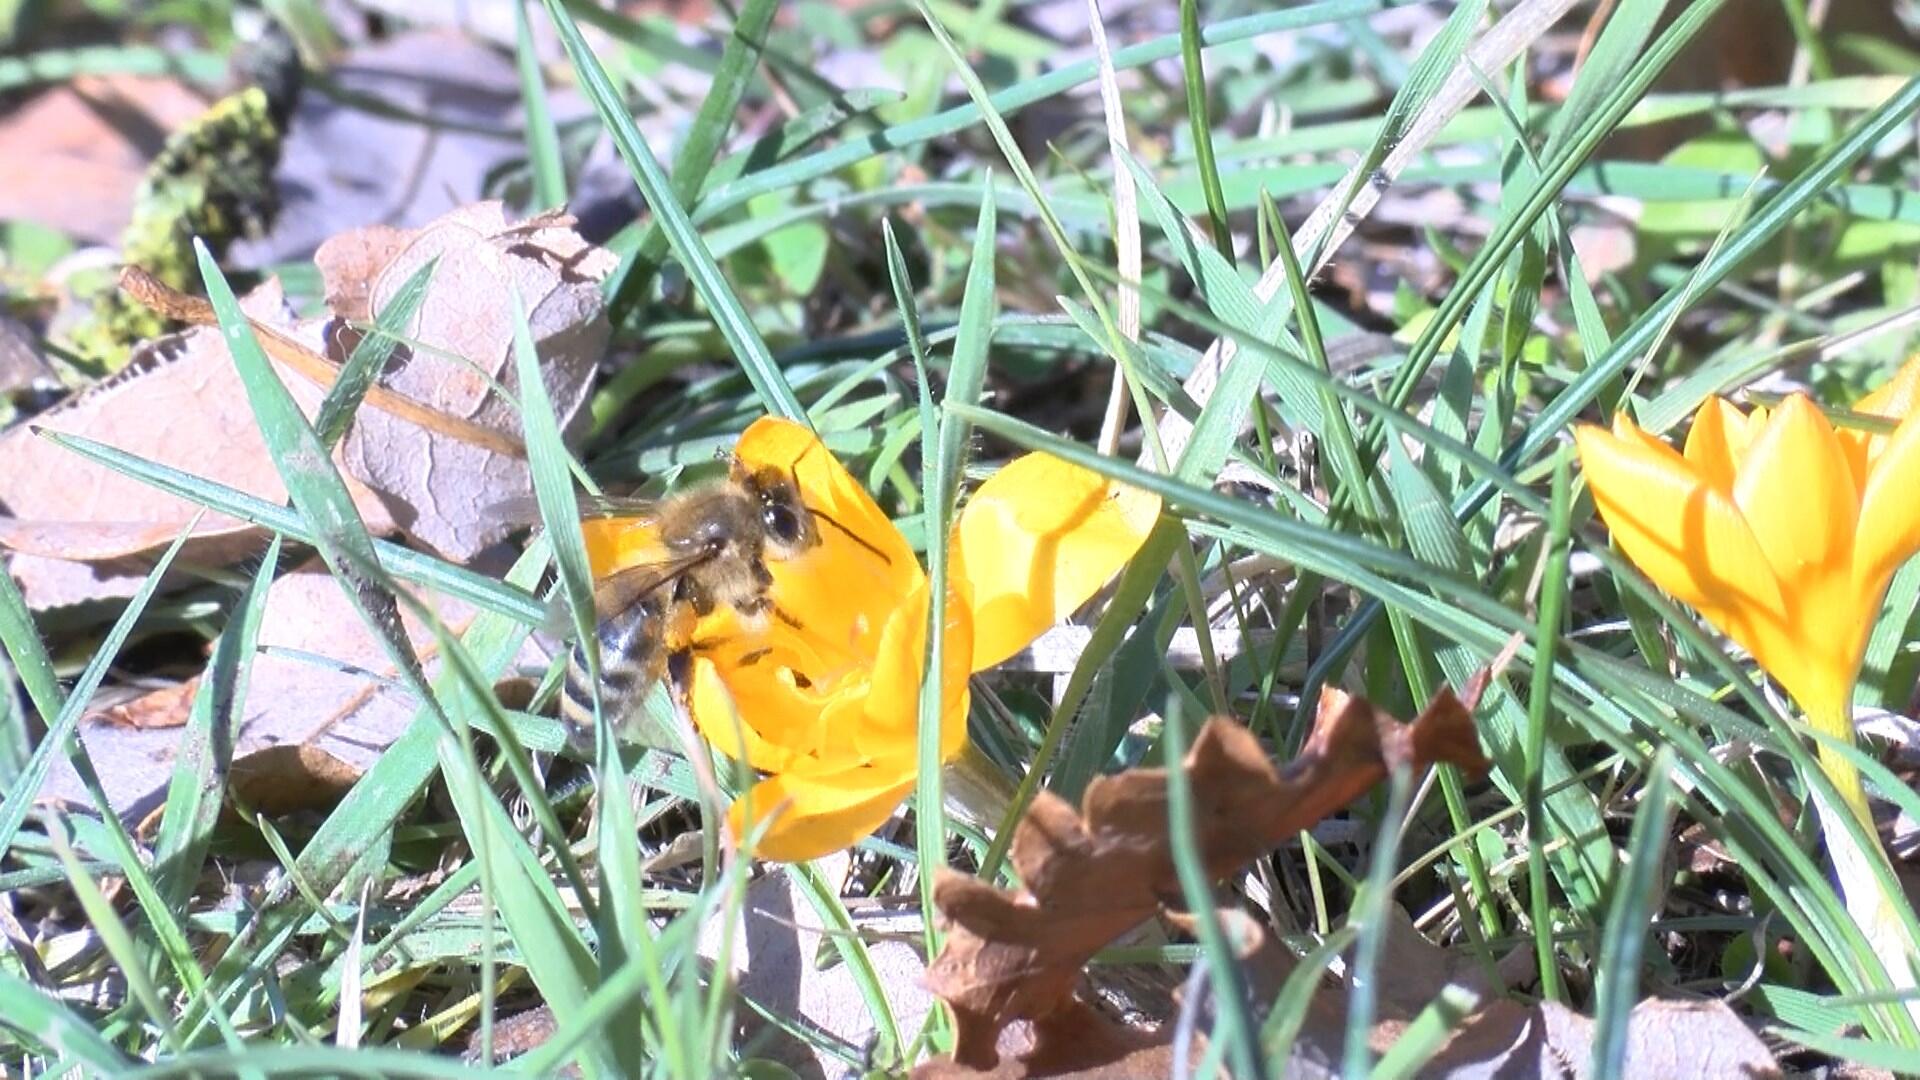 Arıcılar kendi kuracakları, düşük maliyetli sistem ile kovanlarını soğuktan koruyacak